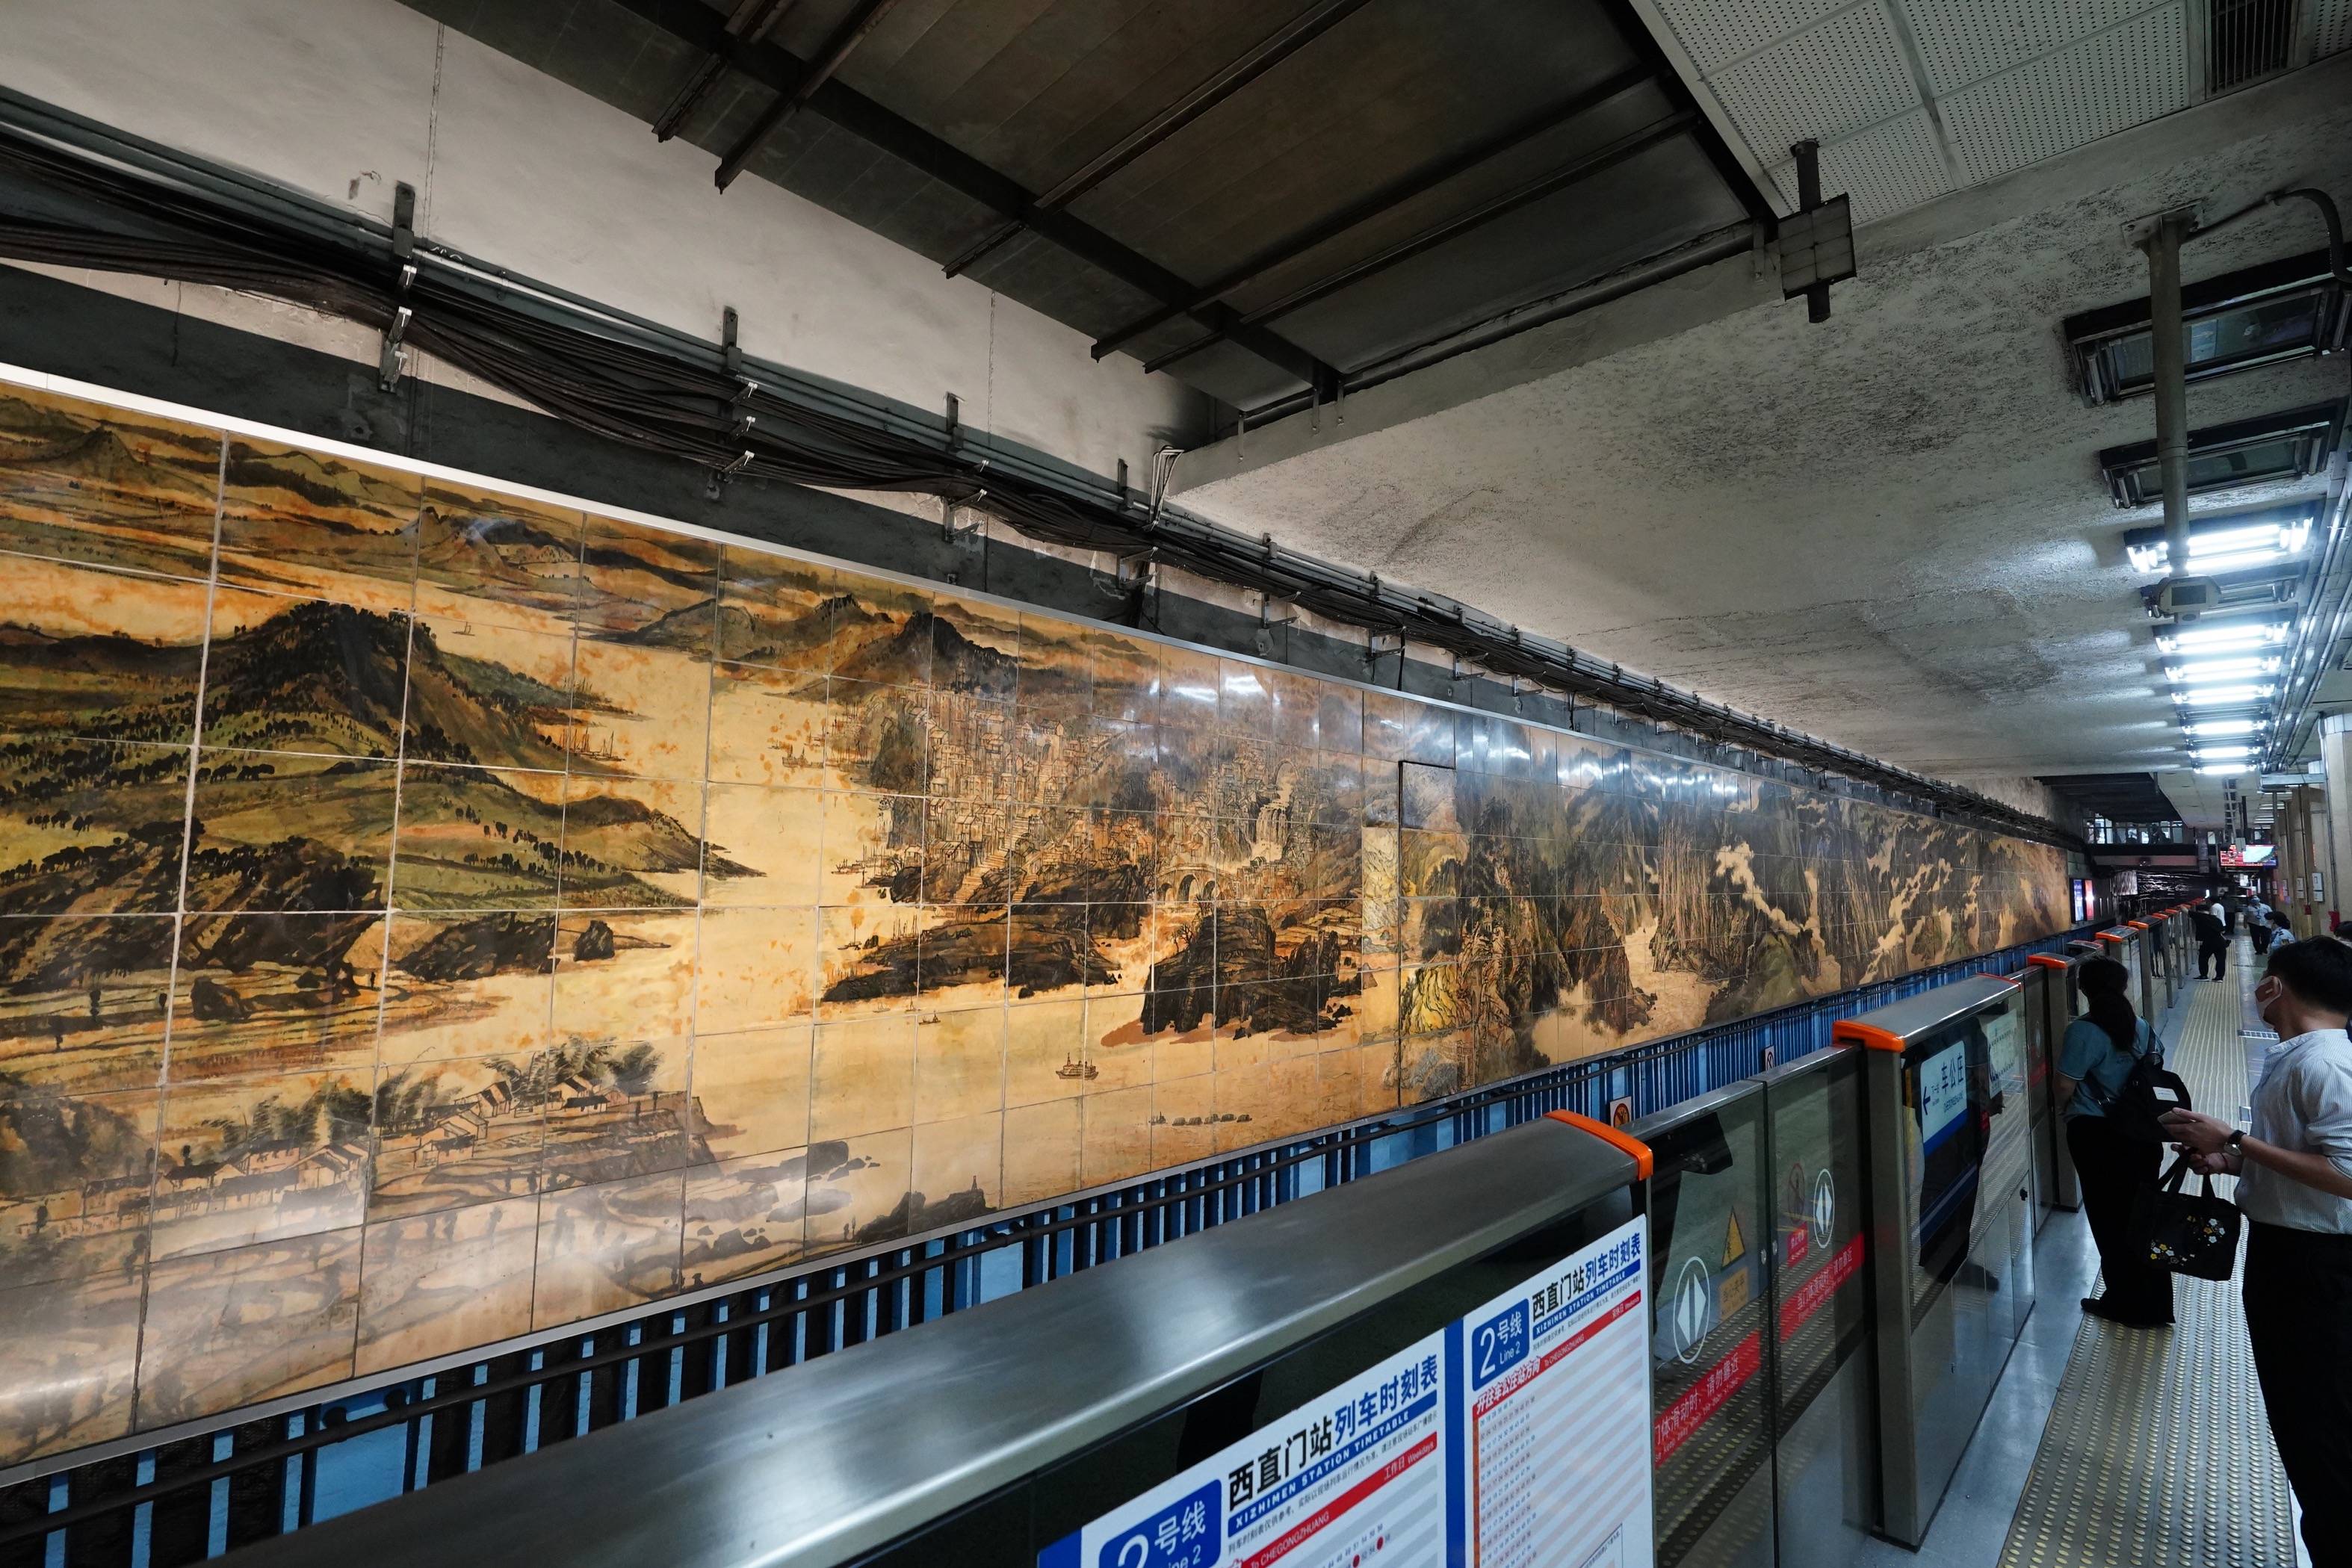 细数北京地铁壁画前世今生!170余座车站串起艺术长廊